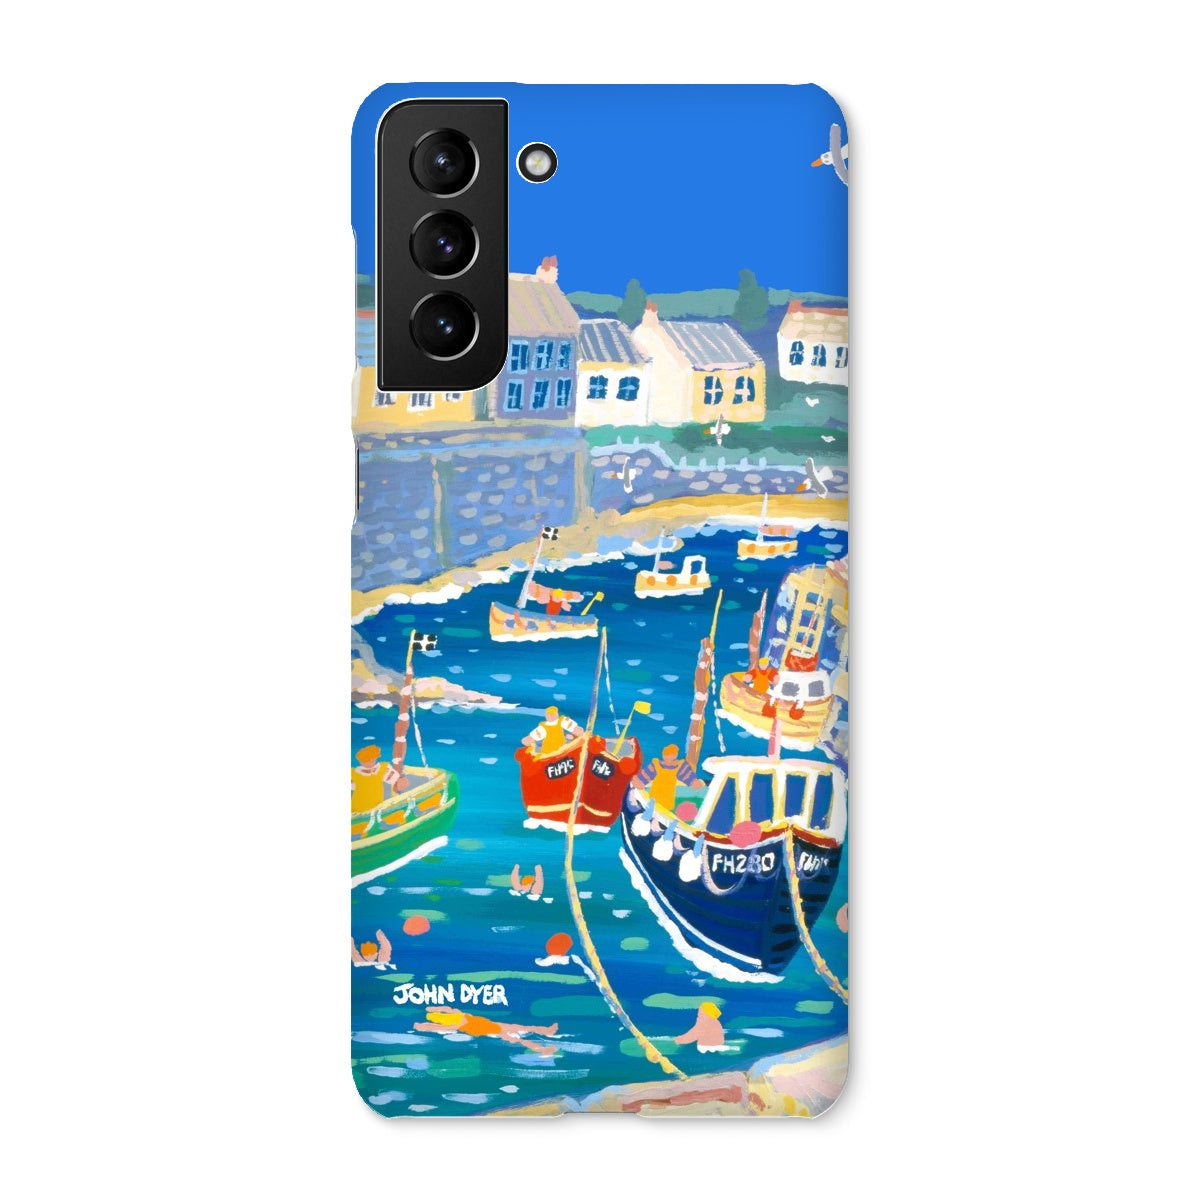 Snap Art Phone Case. Coverack Harbour. Artist John Dyer. Cornwall Art Gallery